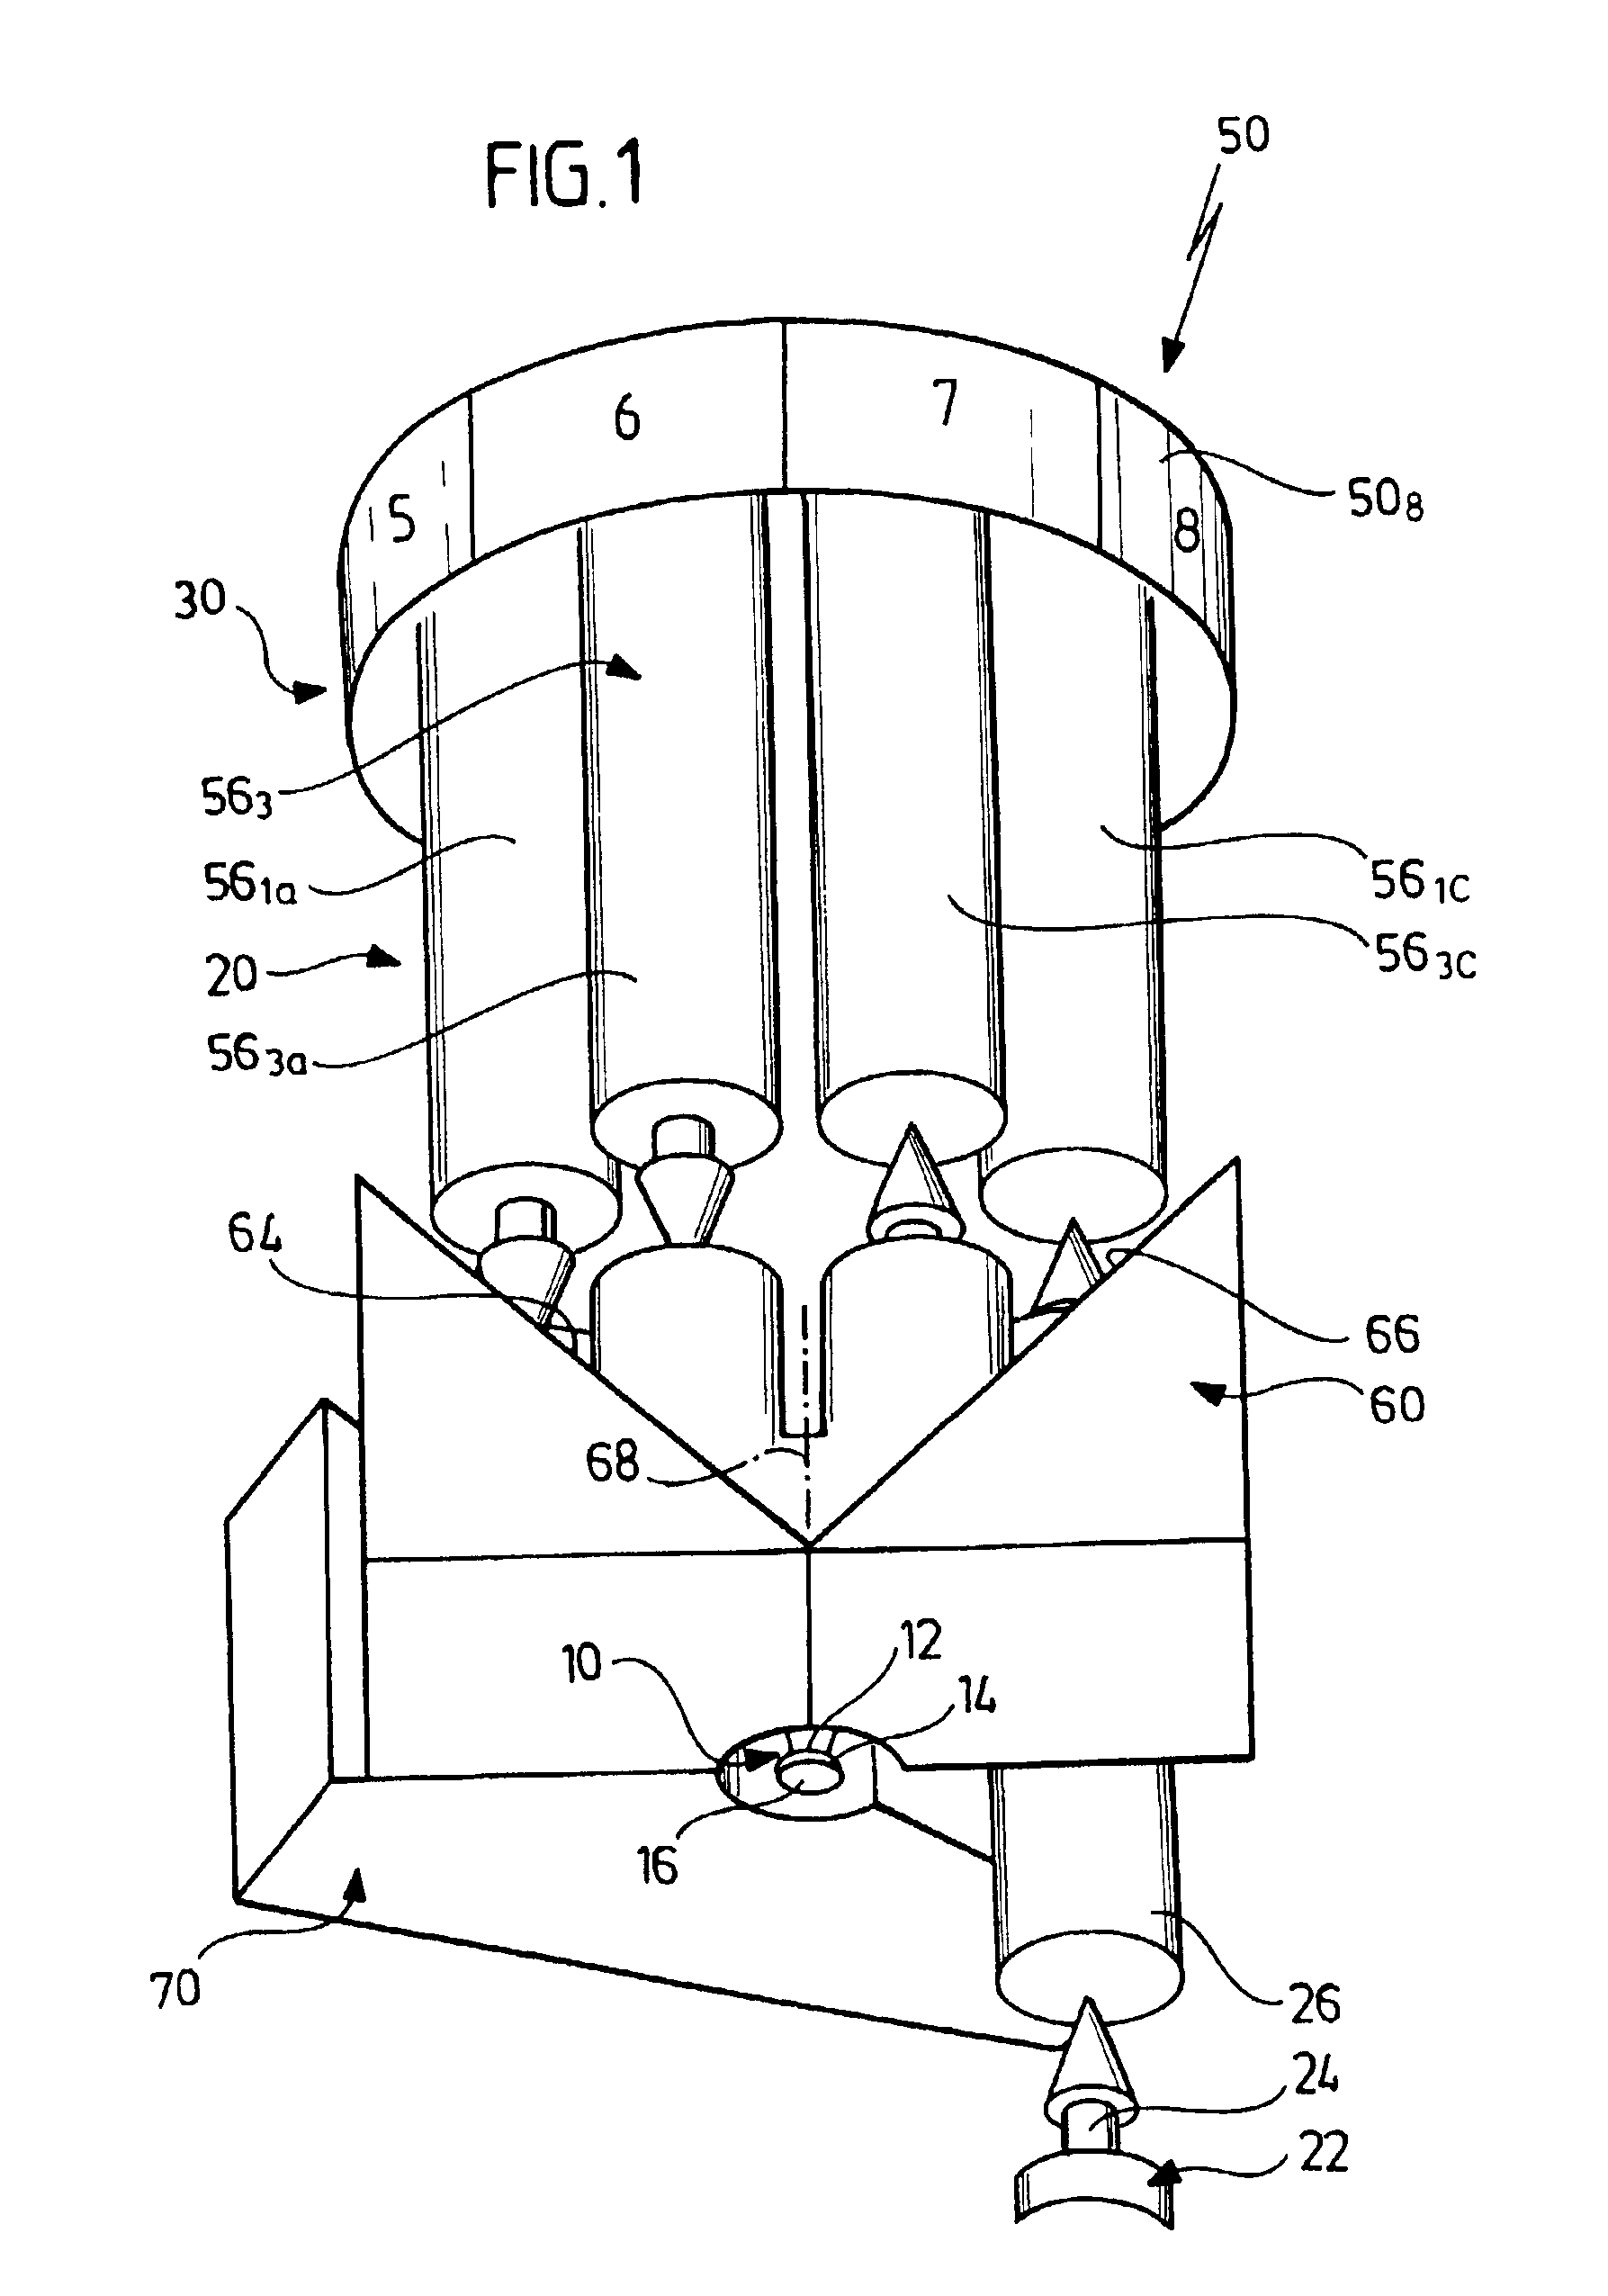 Laser amplifier system